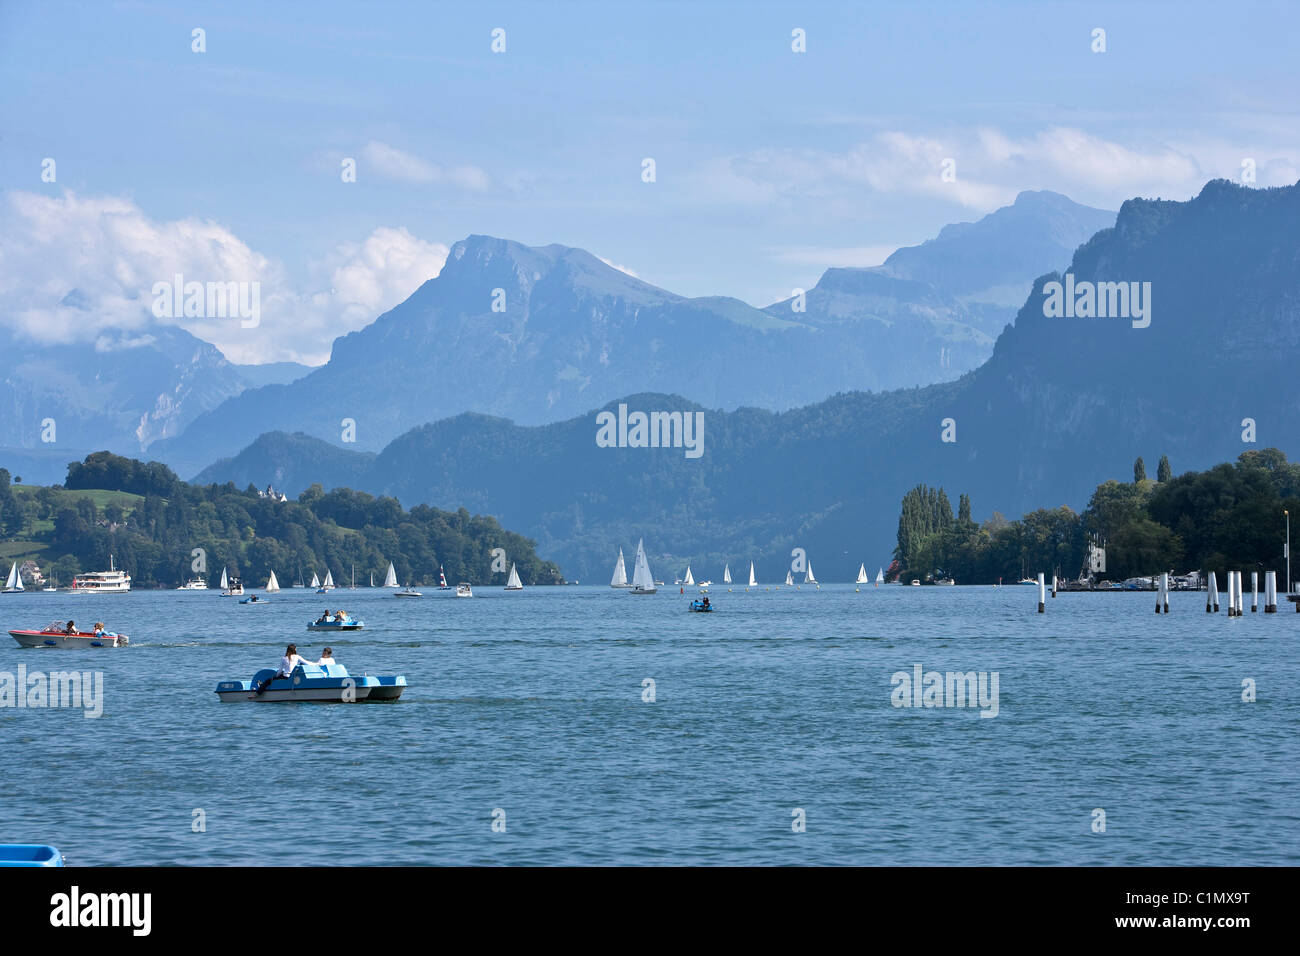 Luzern, Vierwaldstädter See Stock Photo